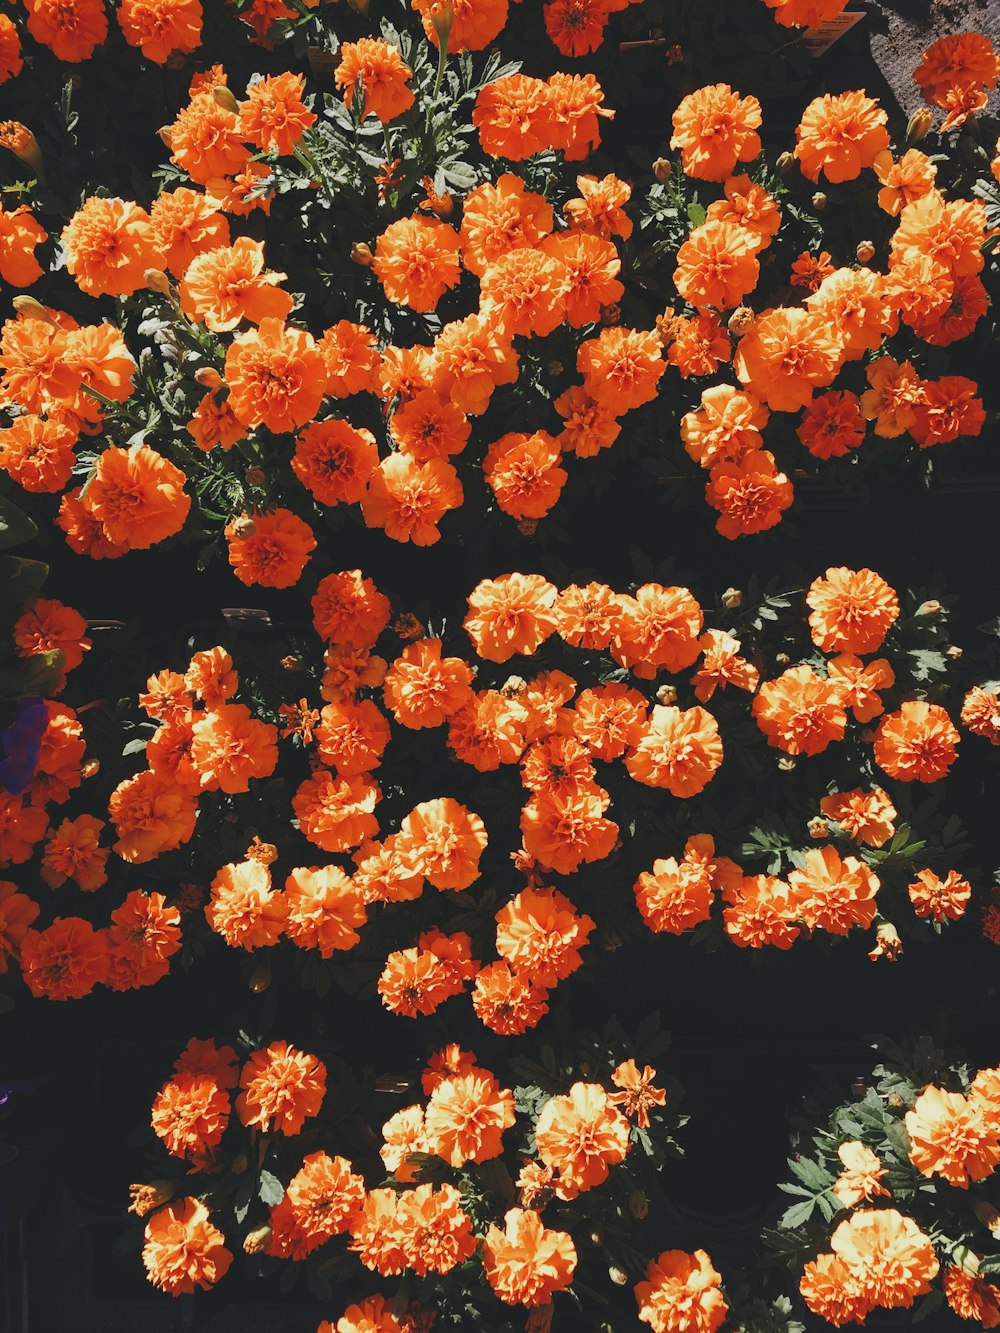 昼間にオレンジ色の花びらを咲かせる